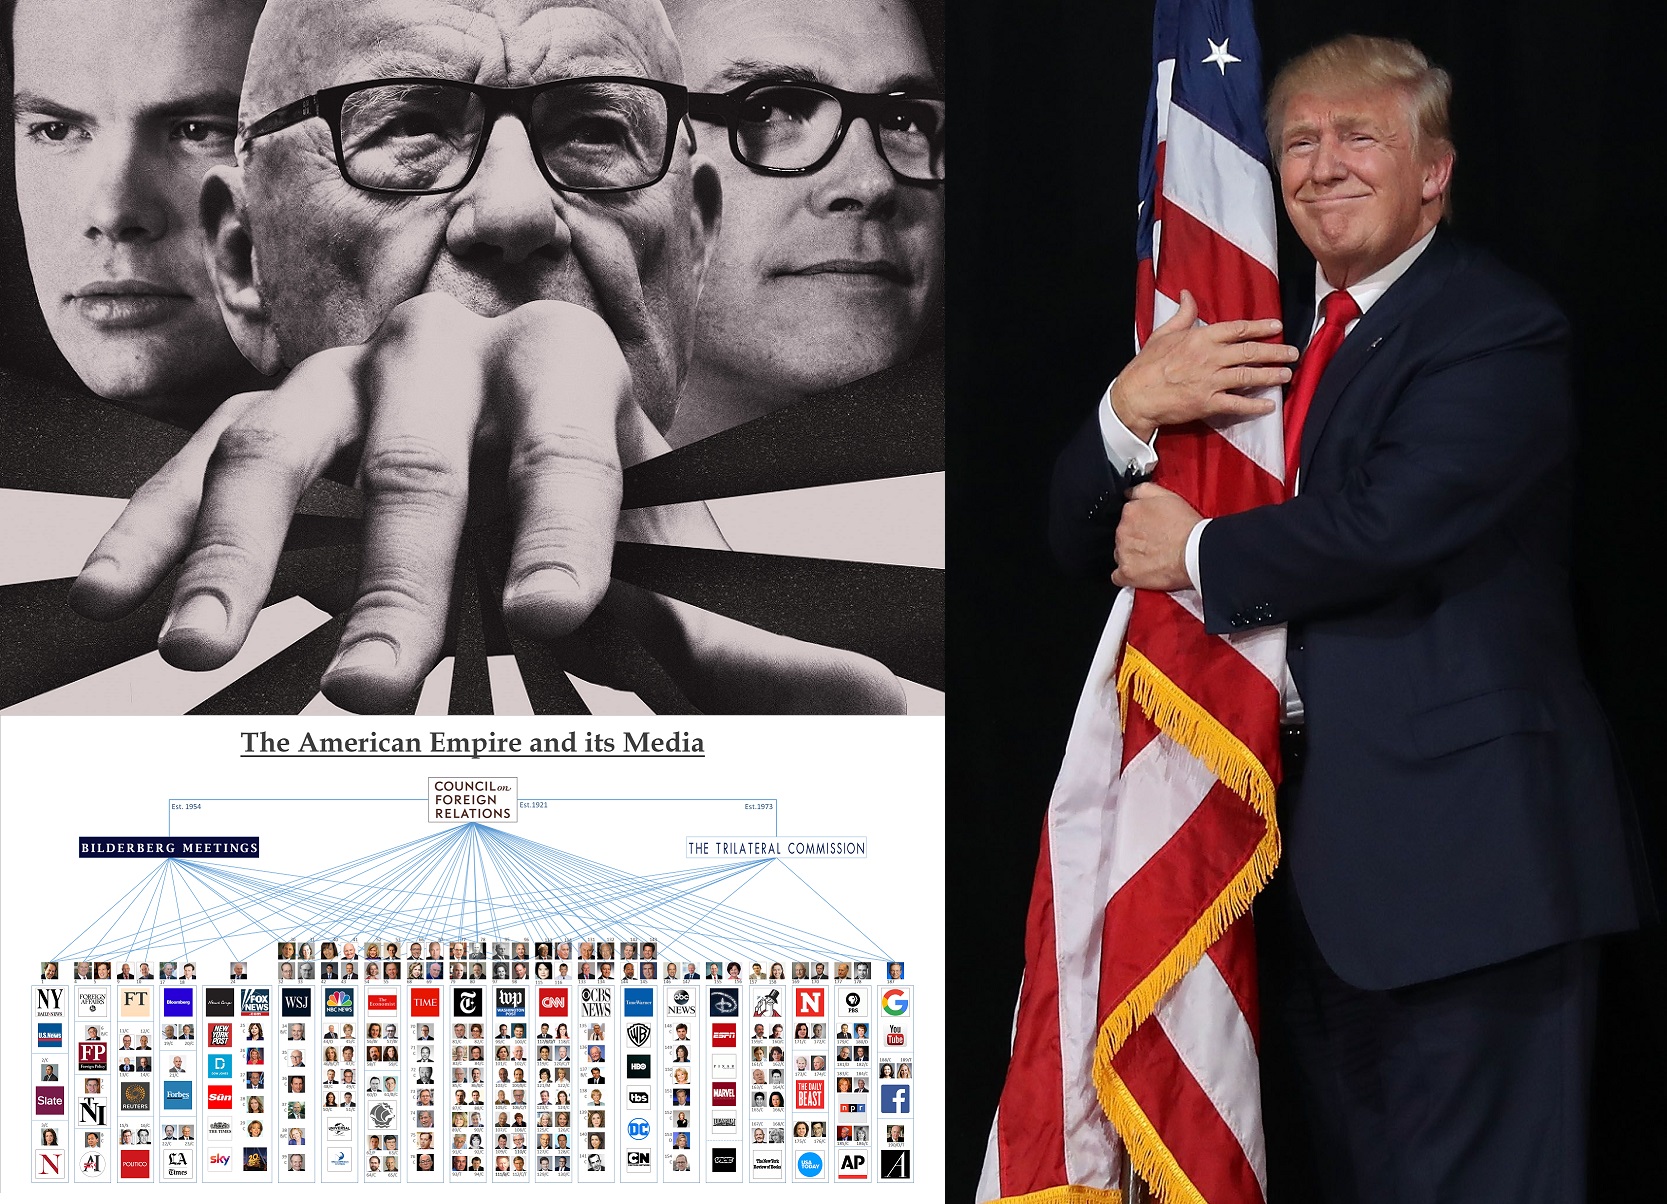 Murdoch, mogulul Fox News care l-a trădat pe Trump, face parte împreună cu Biden și Soros din Grupul Bilderberg și Comisia pentru Relații Externe, creatoarea Trilateralei. Cele trei organizații controlează “fake mass media” care l-a îngropat pe Trump